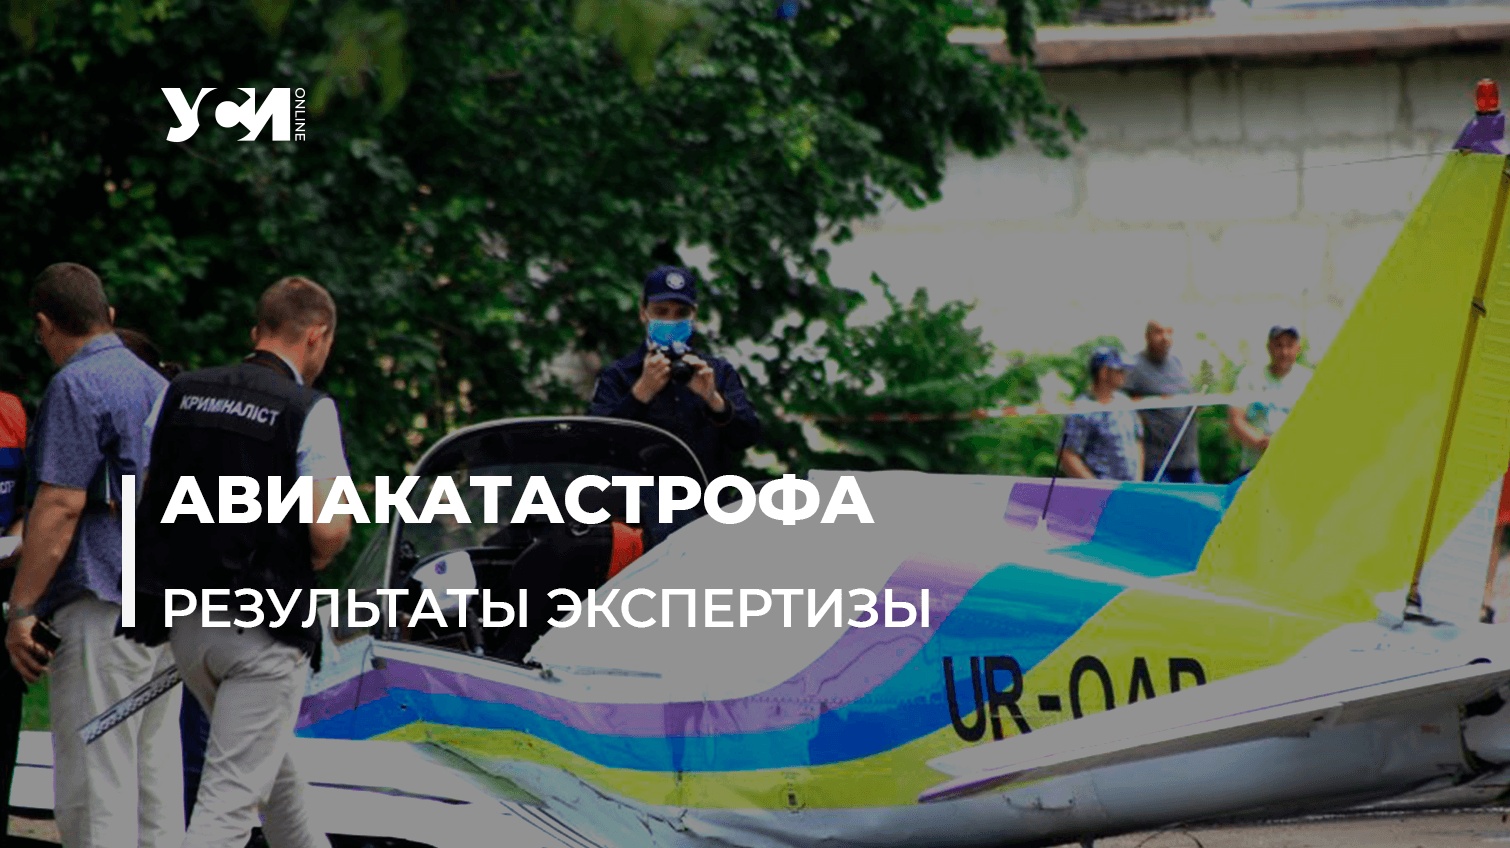 Авиакатастрофа в Одессе в 2020 году: названы причины «фото»